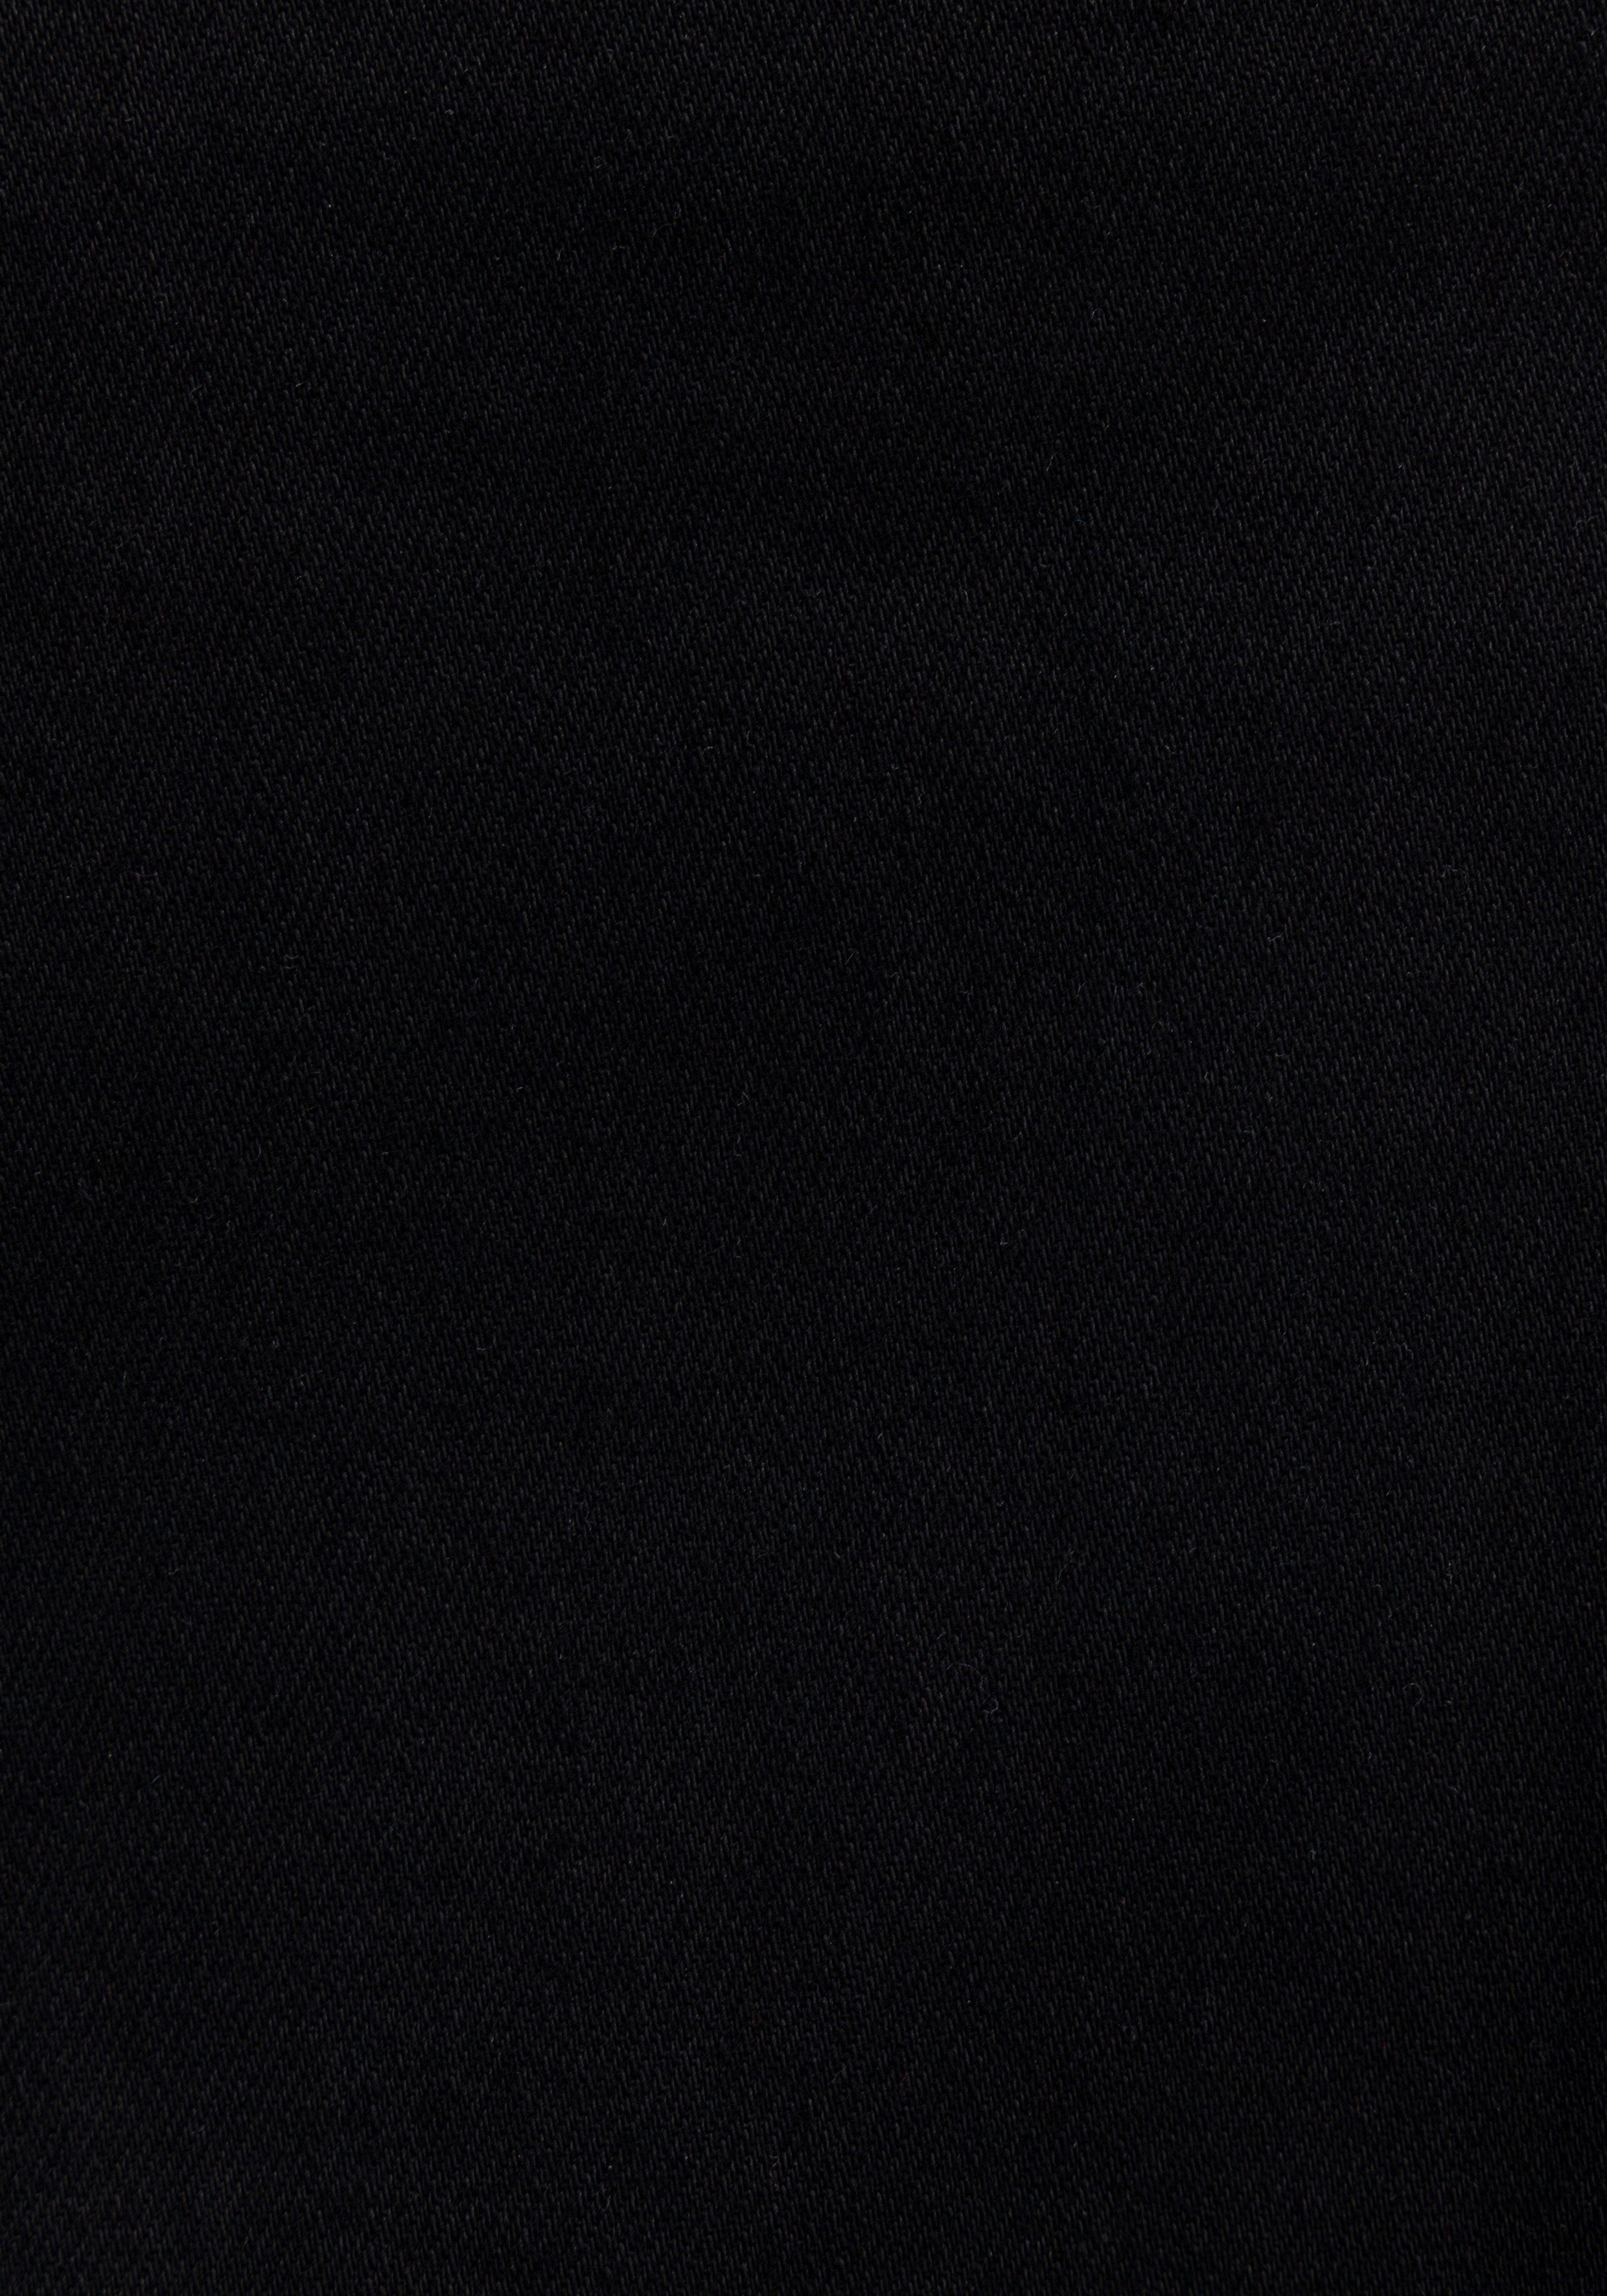 für SUPER perfekten Materialien Tommy und Skinny-fit-Jeans Sitz. Hochwertige Black SKNY bequemen einen SYLVIA Staten Jeans HR